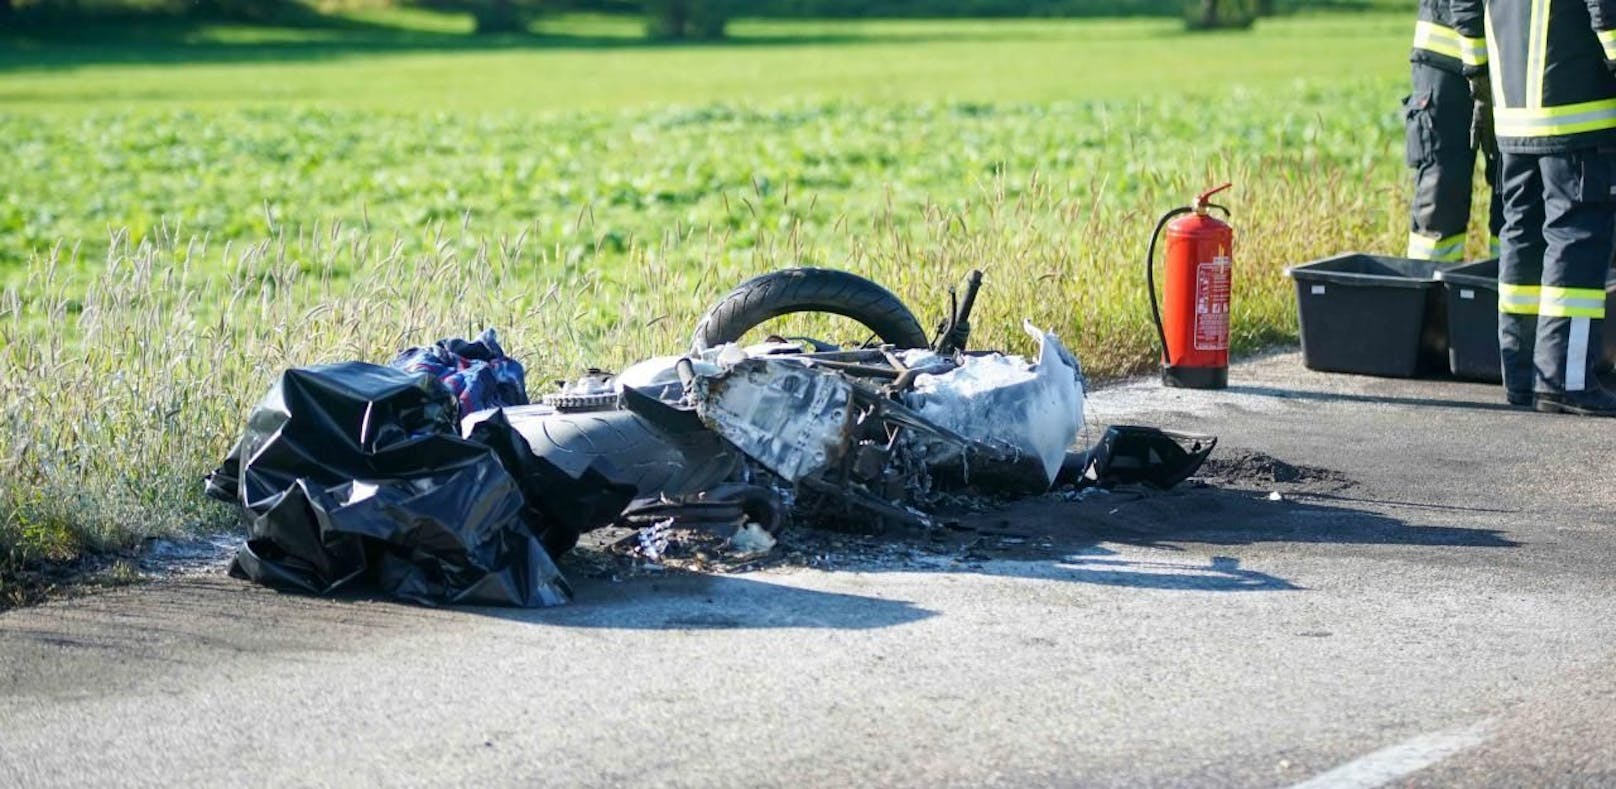 Bike geht in Flammen auf, Motorradfahrer stirbt